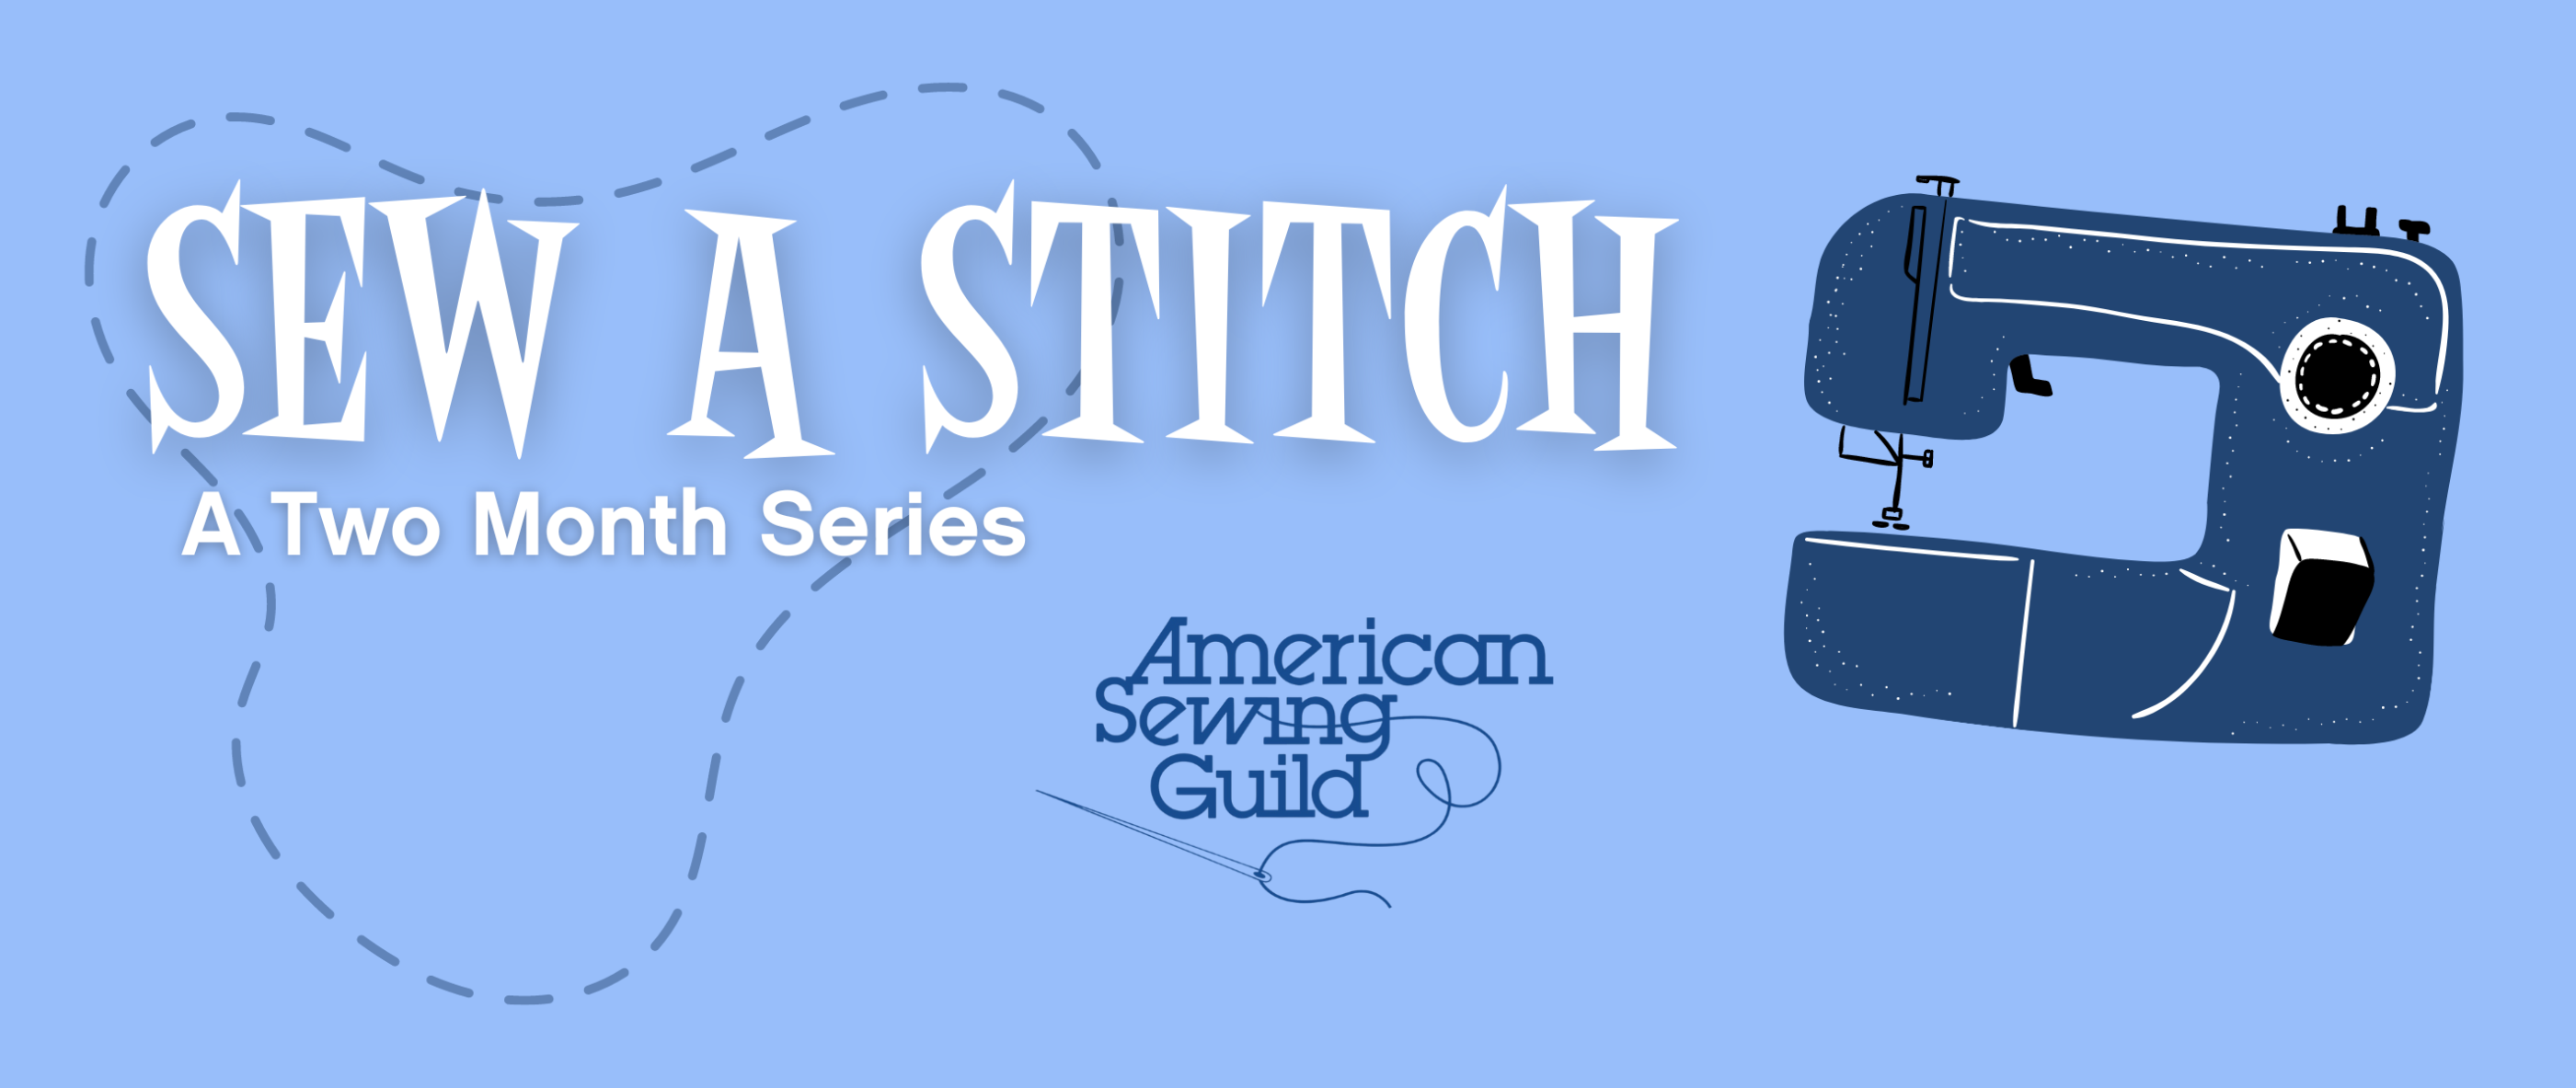 sew a stitch 